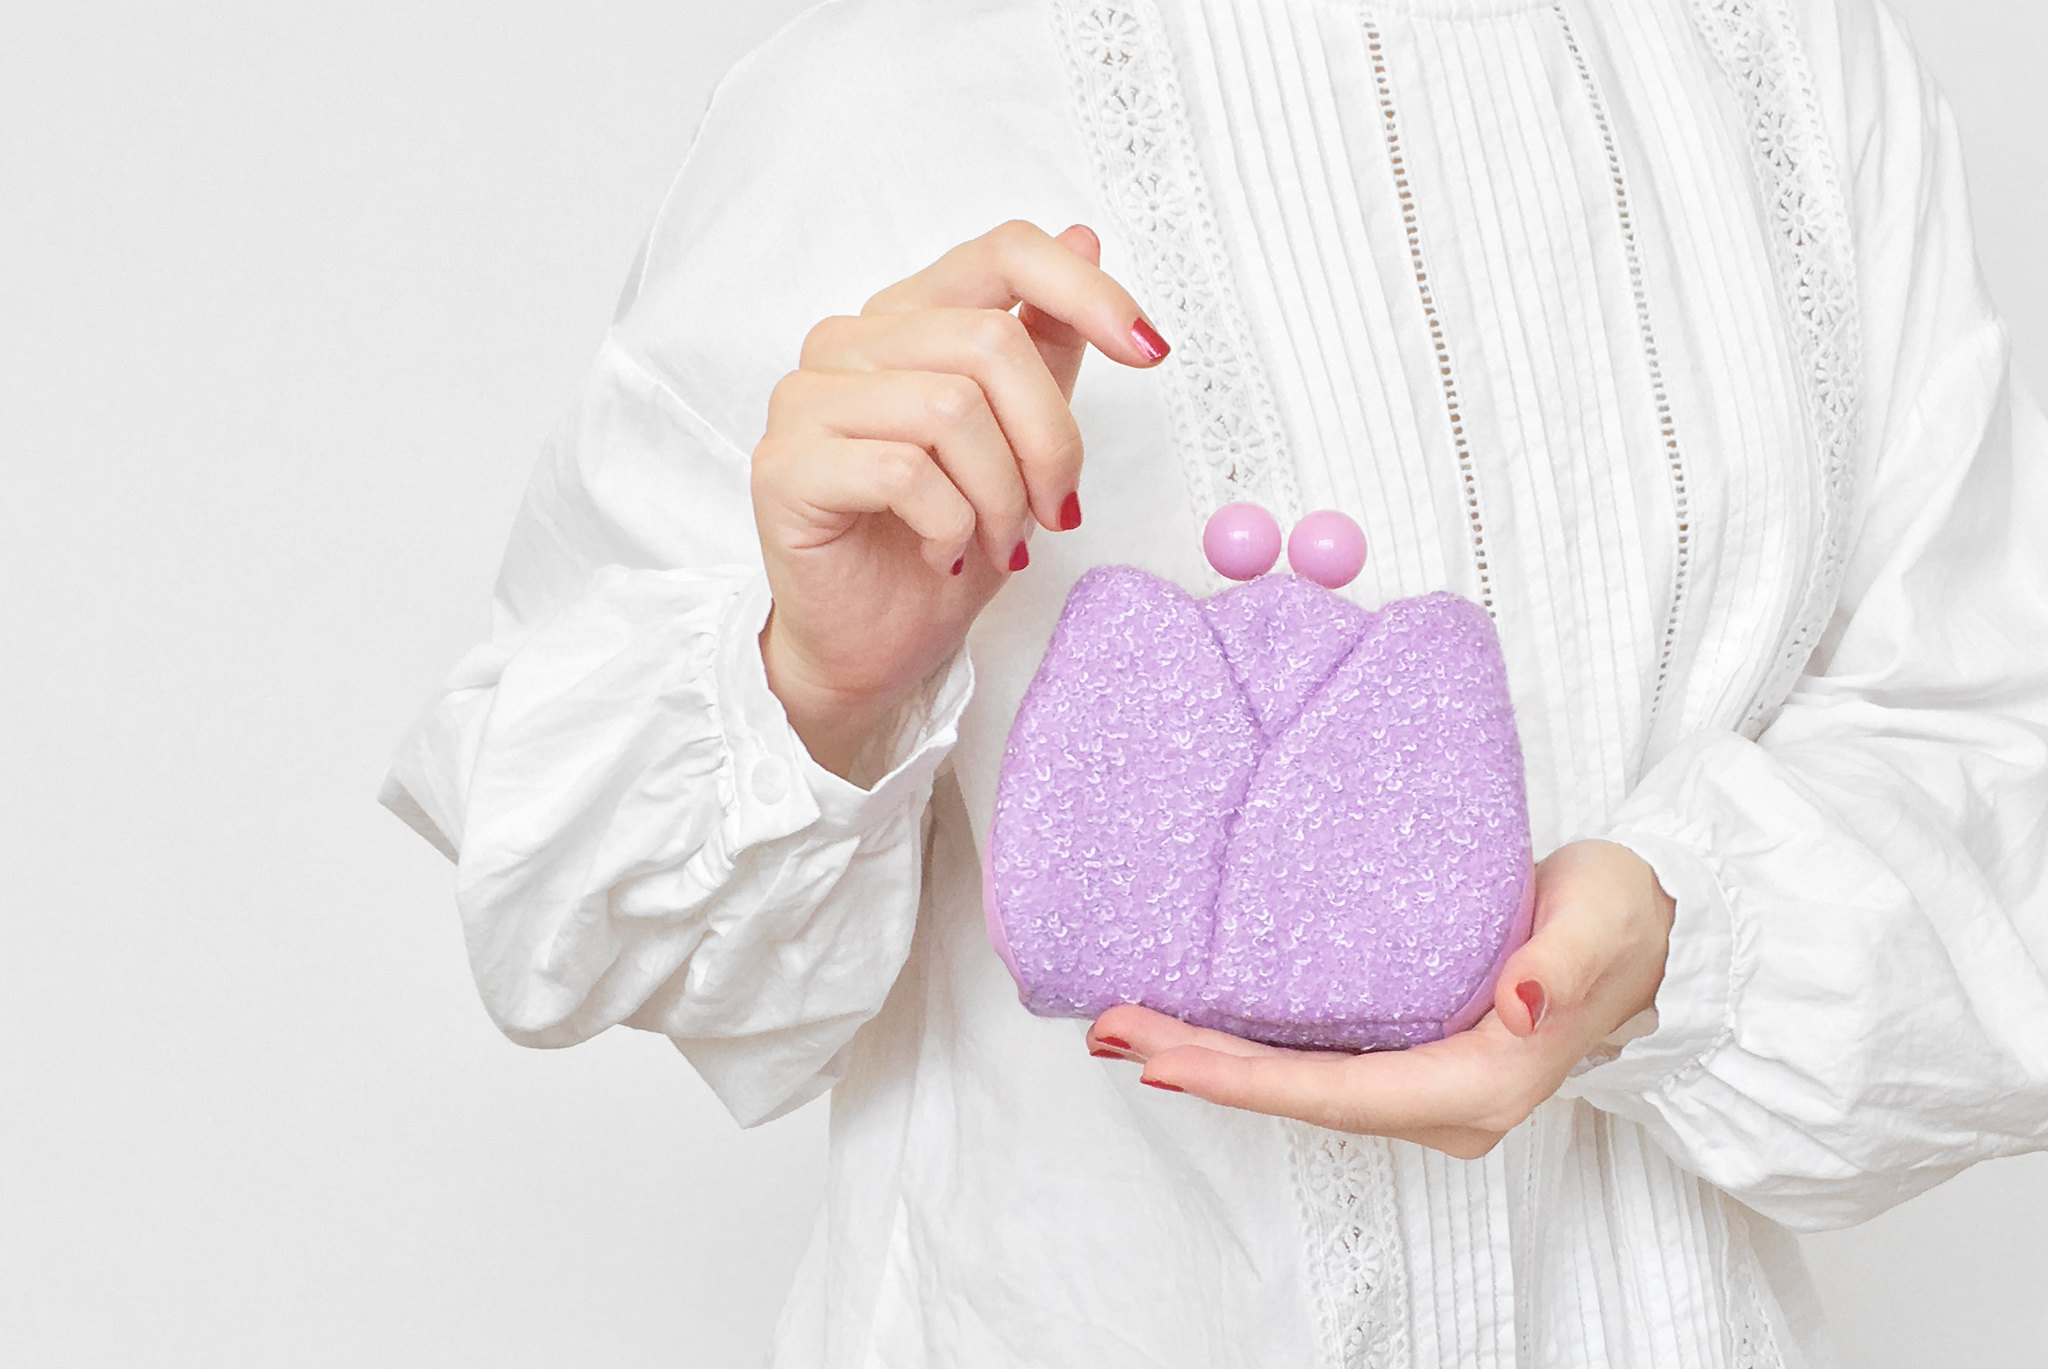 bi-fold wallet women wallet gift mist violet kiss lock purse